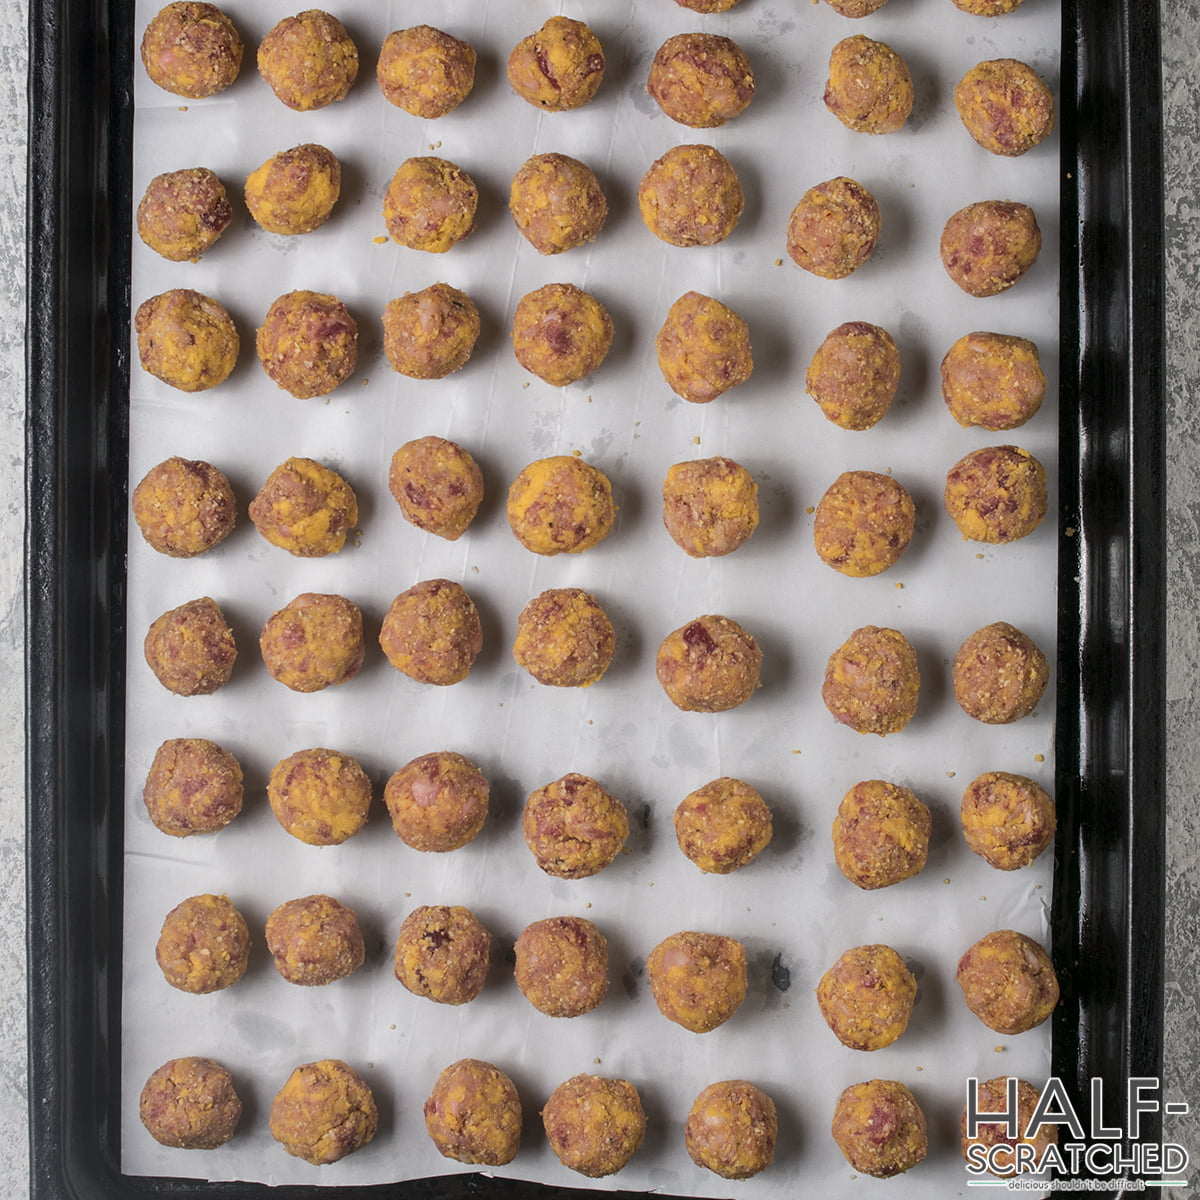 Sausage balls in baking dish